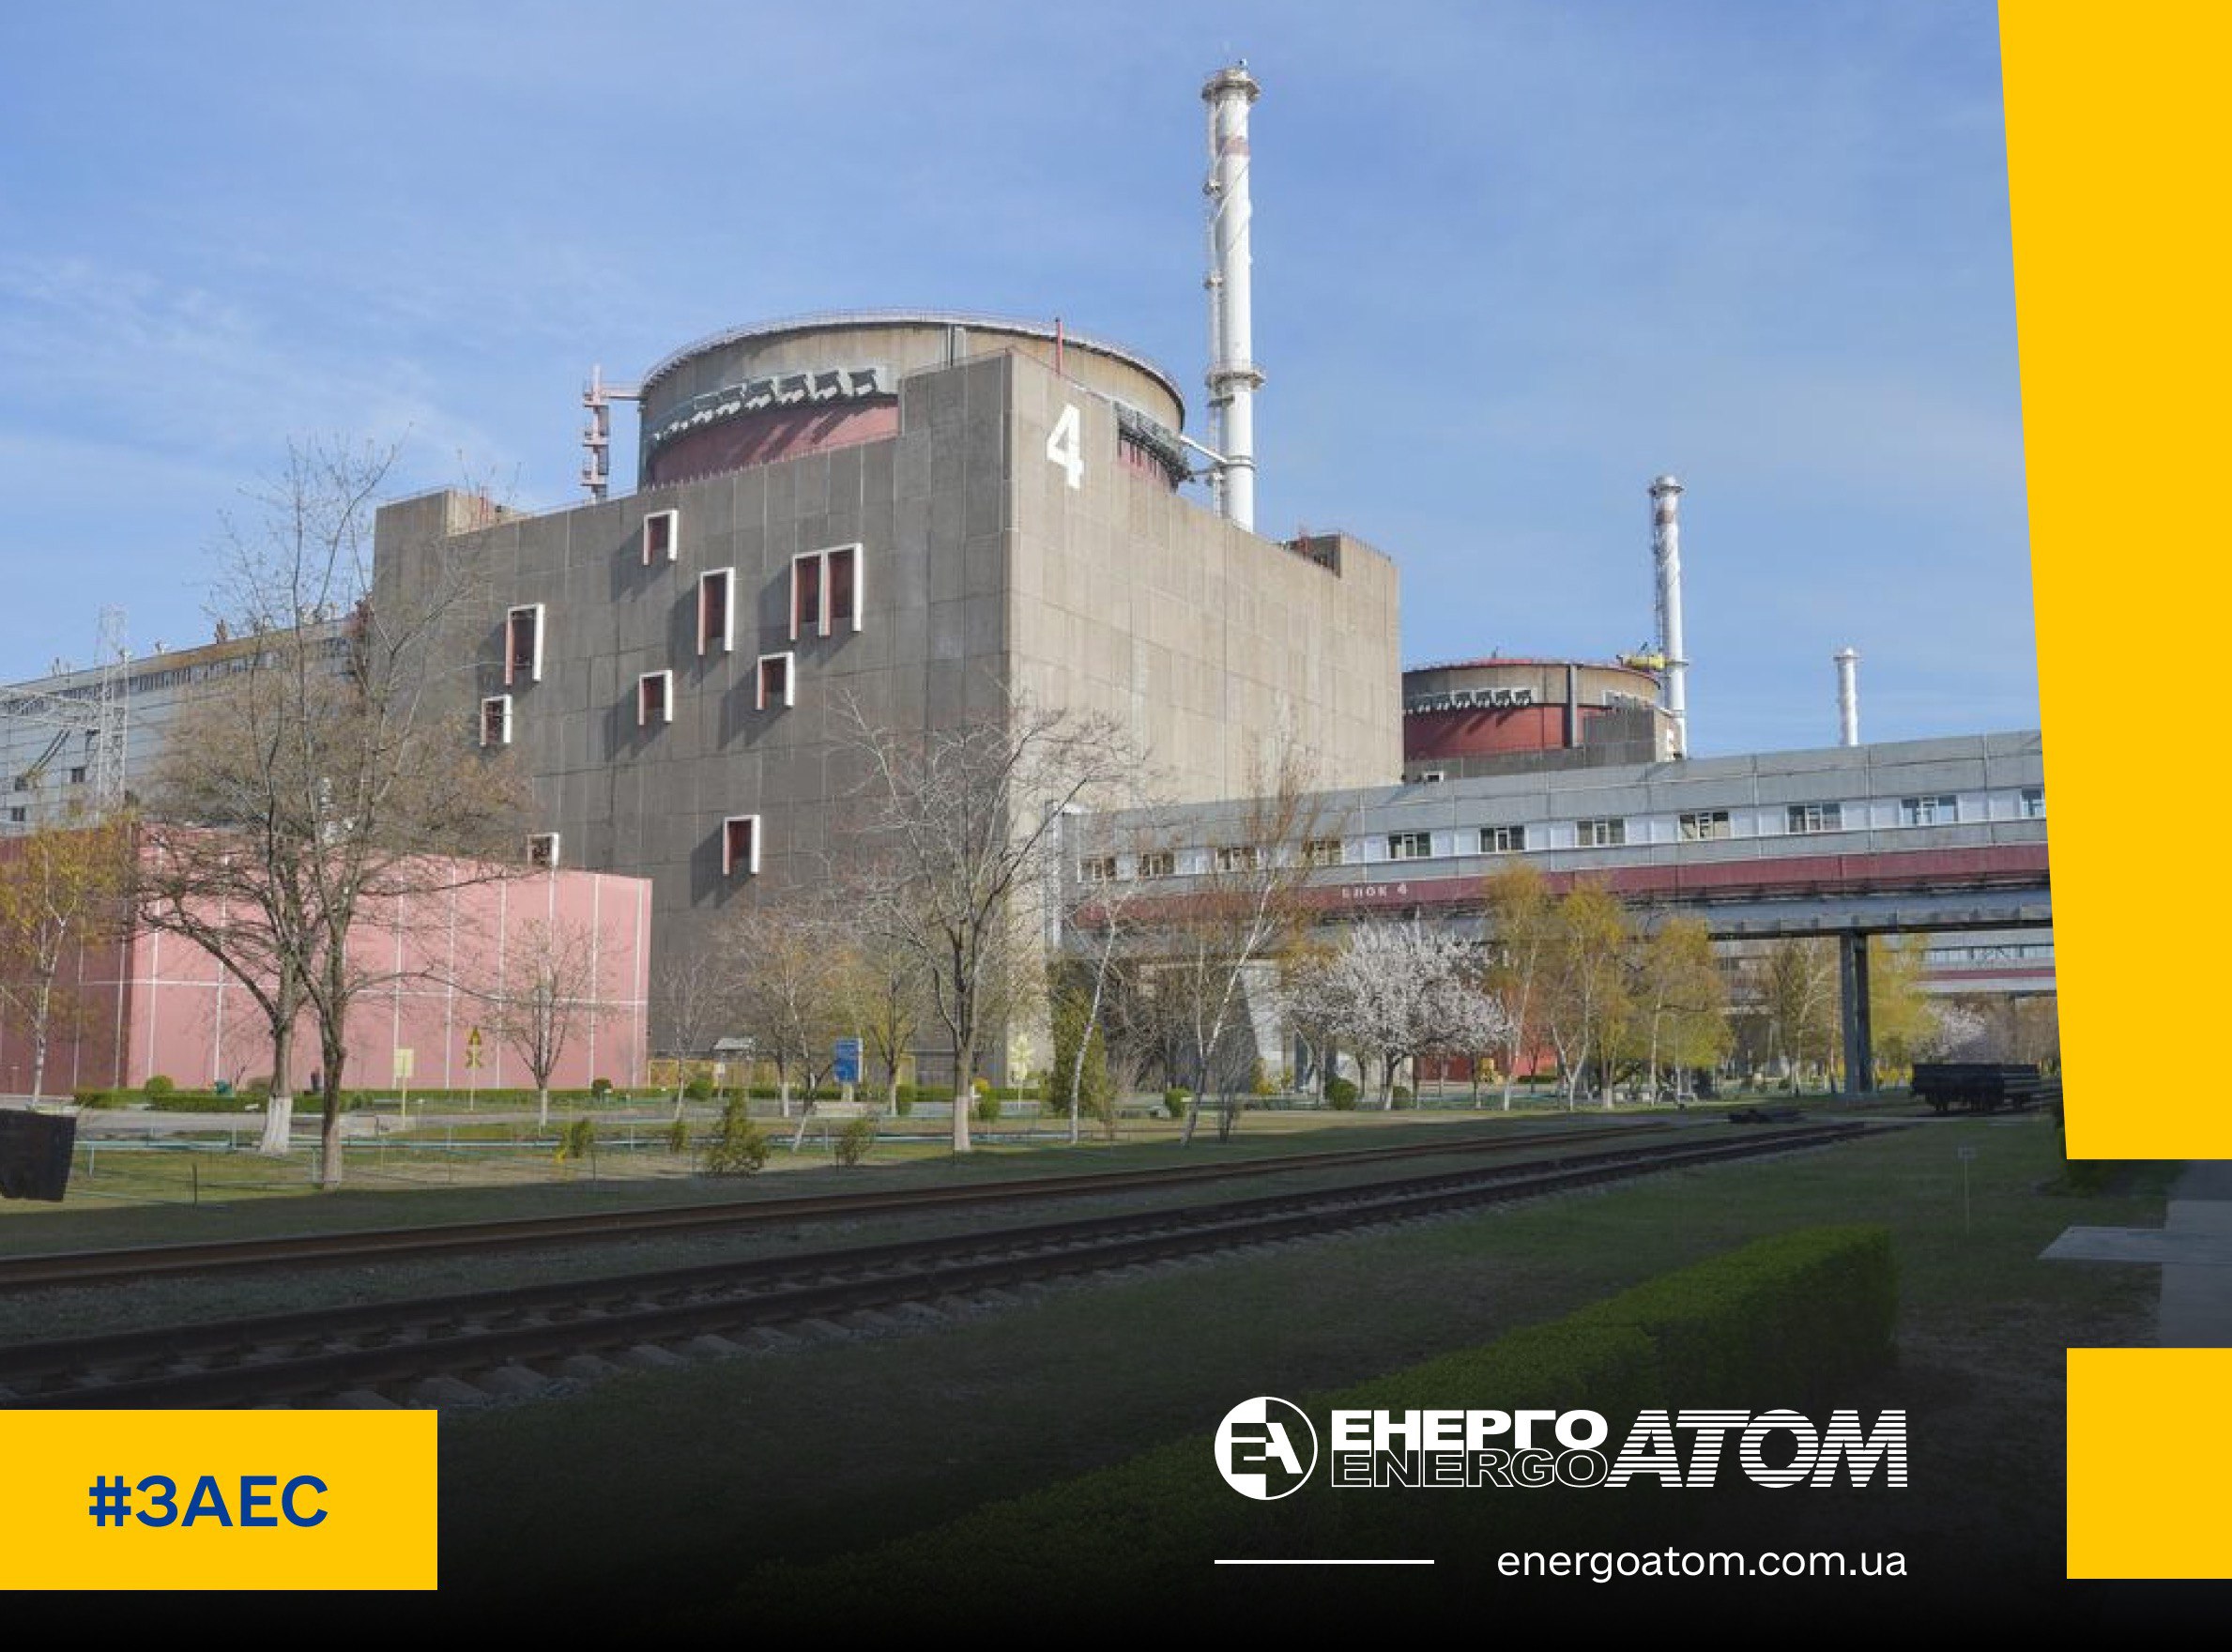 ❗️ Переведення реакторного блоку №4 ЗАЕС у стан «гарячий зупин» є порушенням ядерного законодавства України 